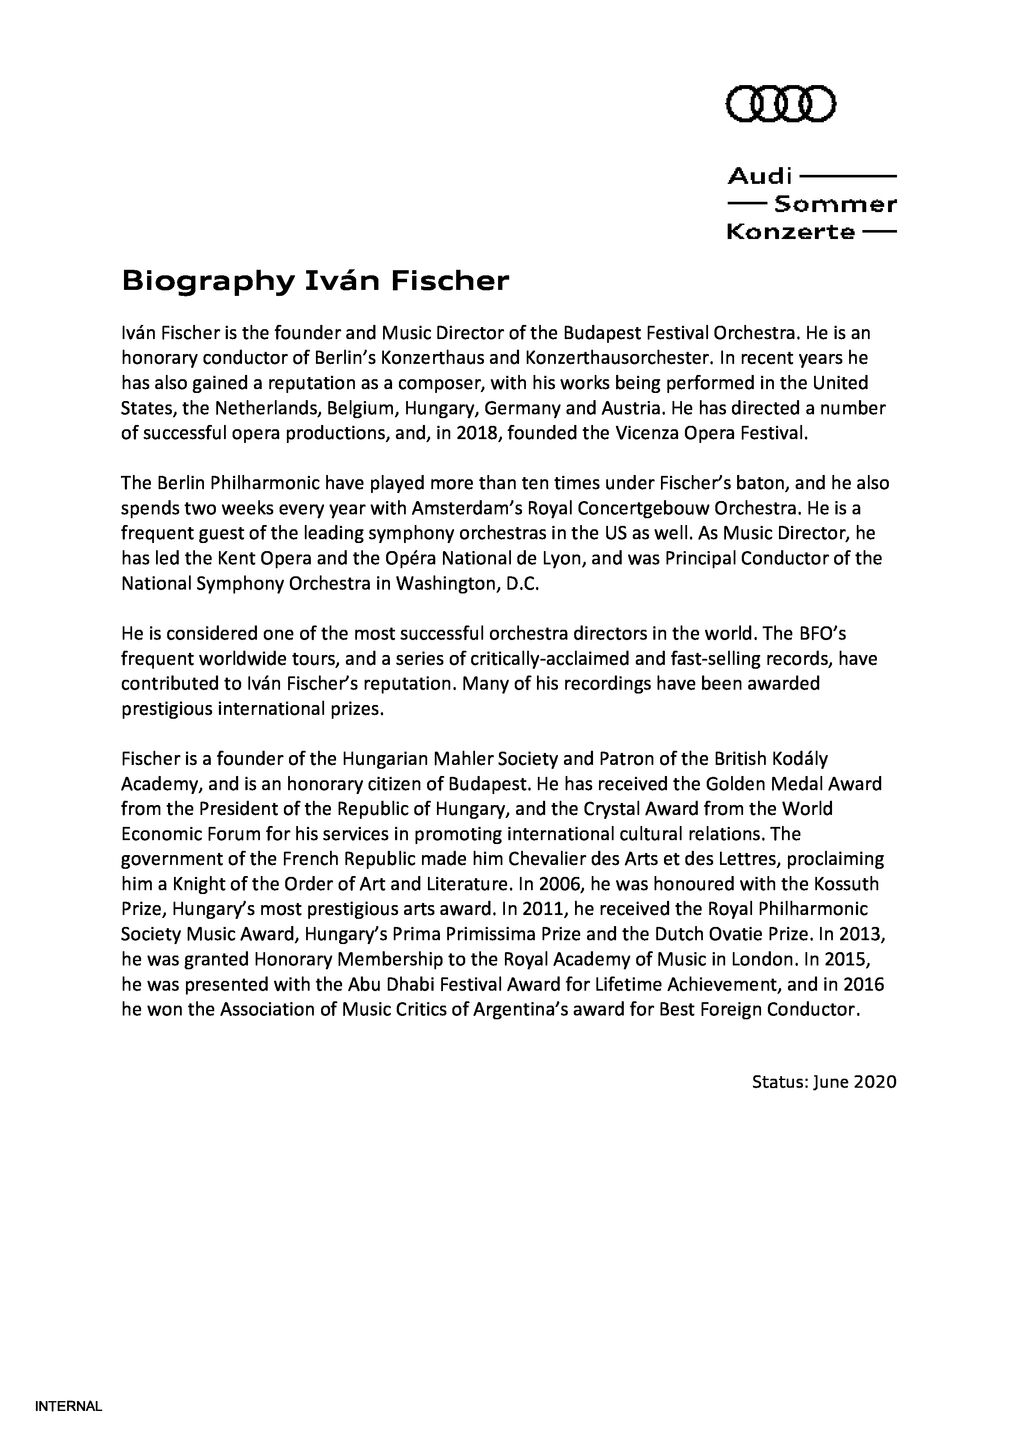 Biography Iván Fischer